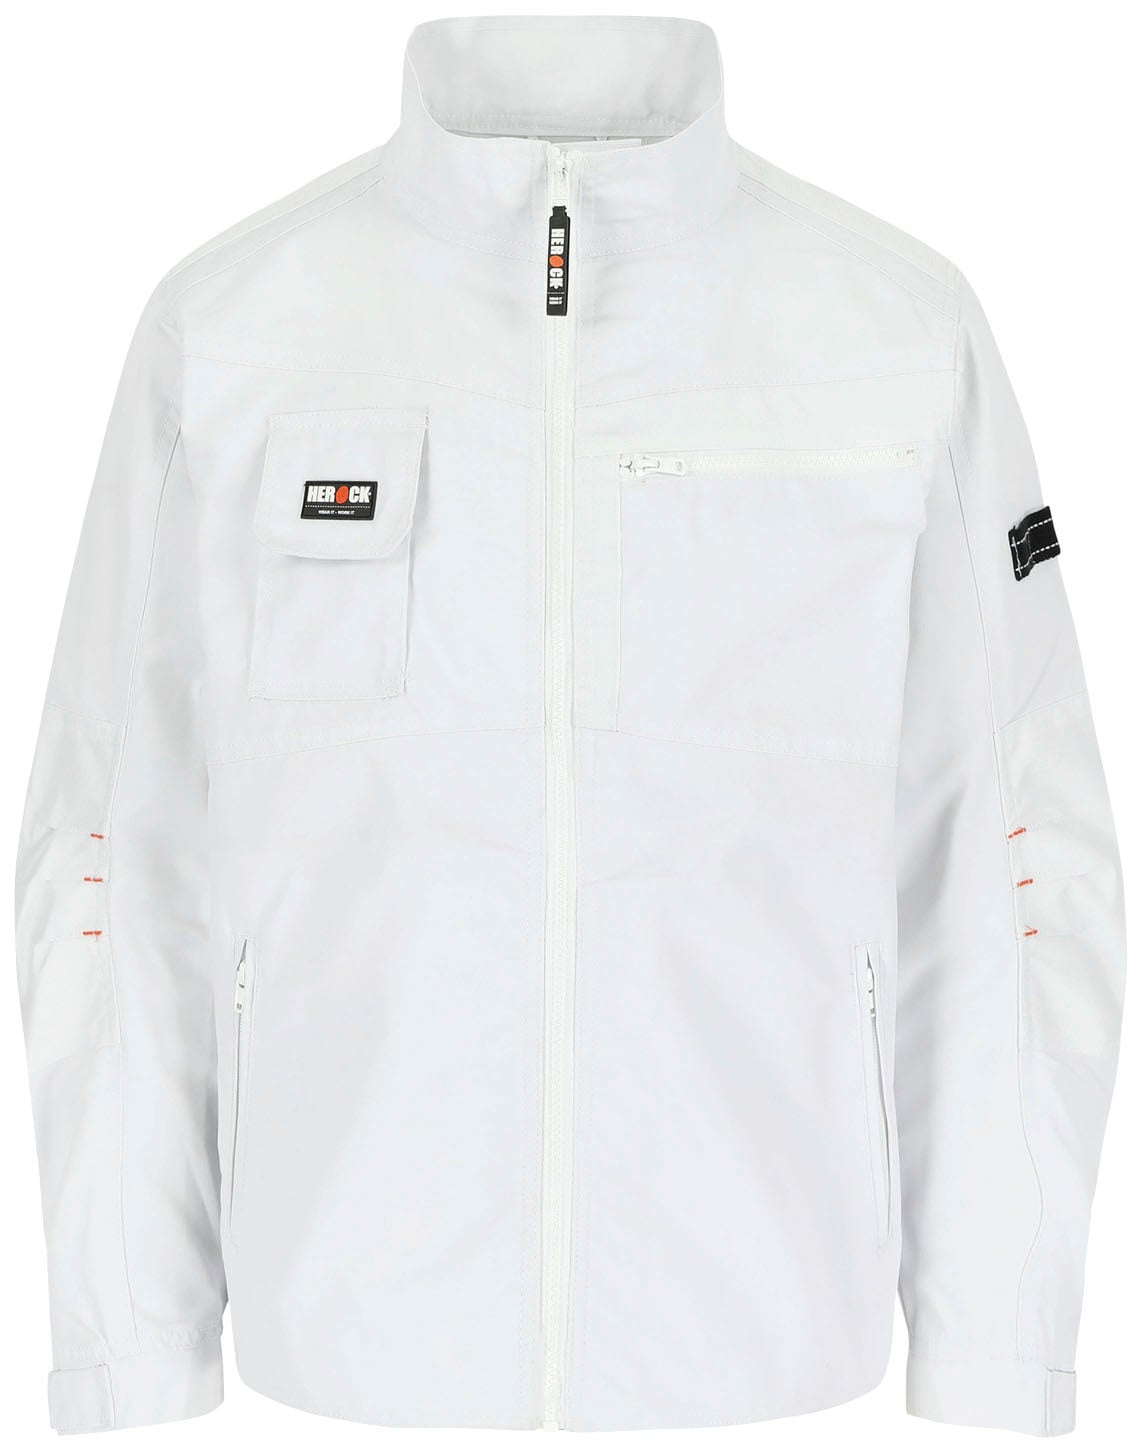 »Anzar Arbeitsjacke - Herock Wasserabweisend robust - Taschen online - 7 verstellbare kaufen Jacke«, Bündchen